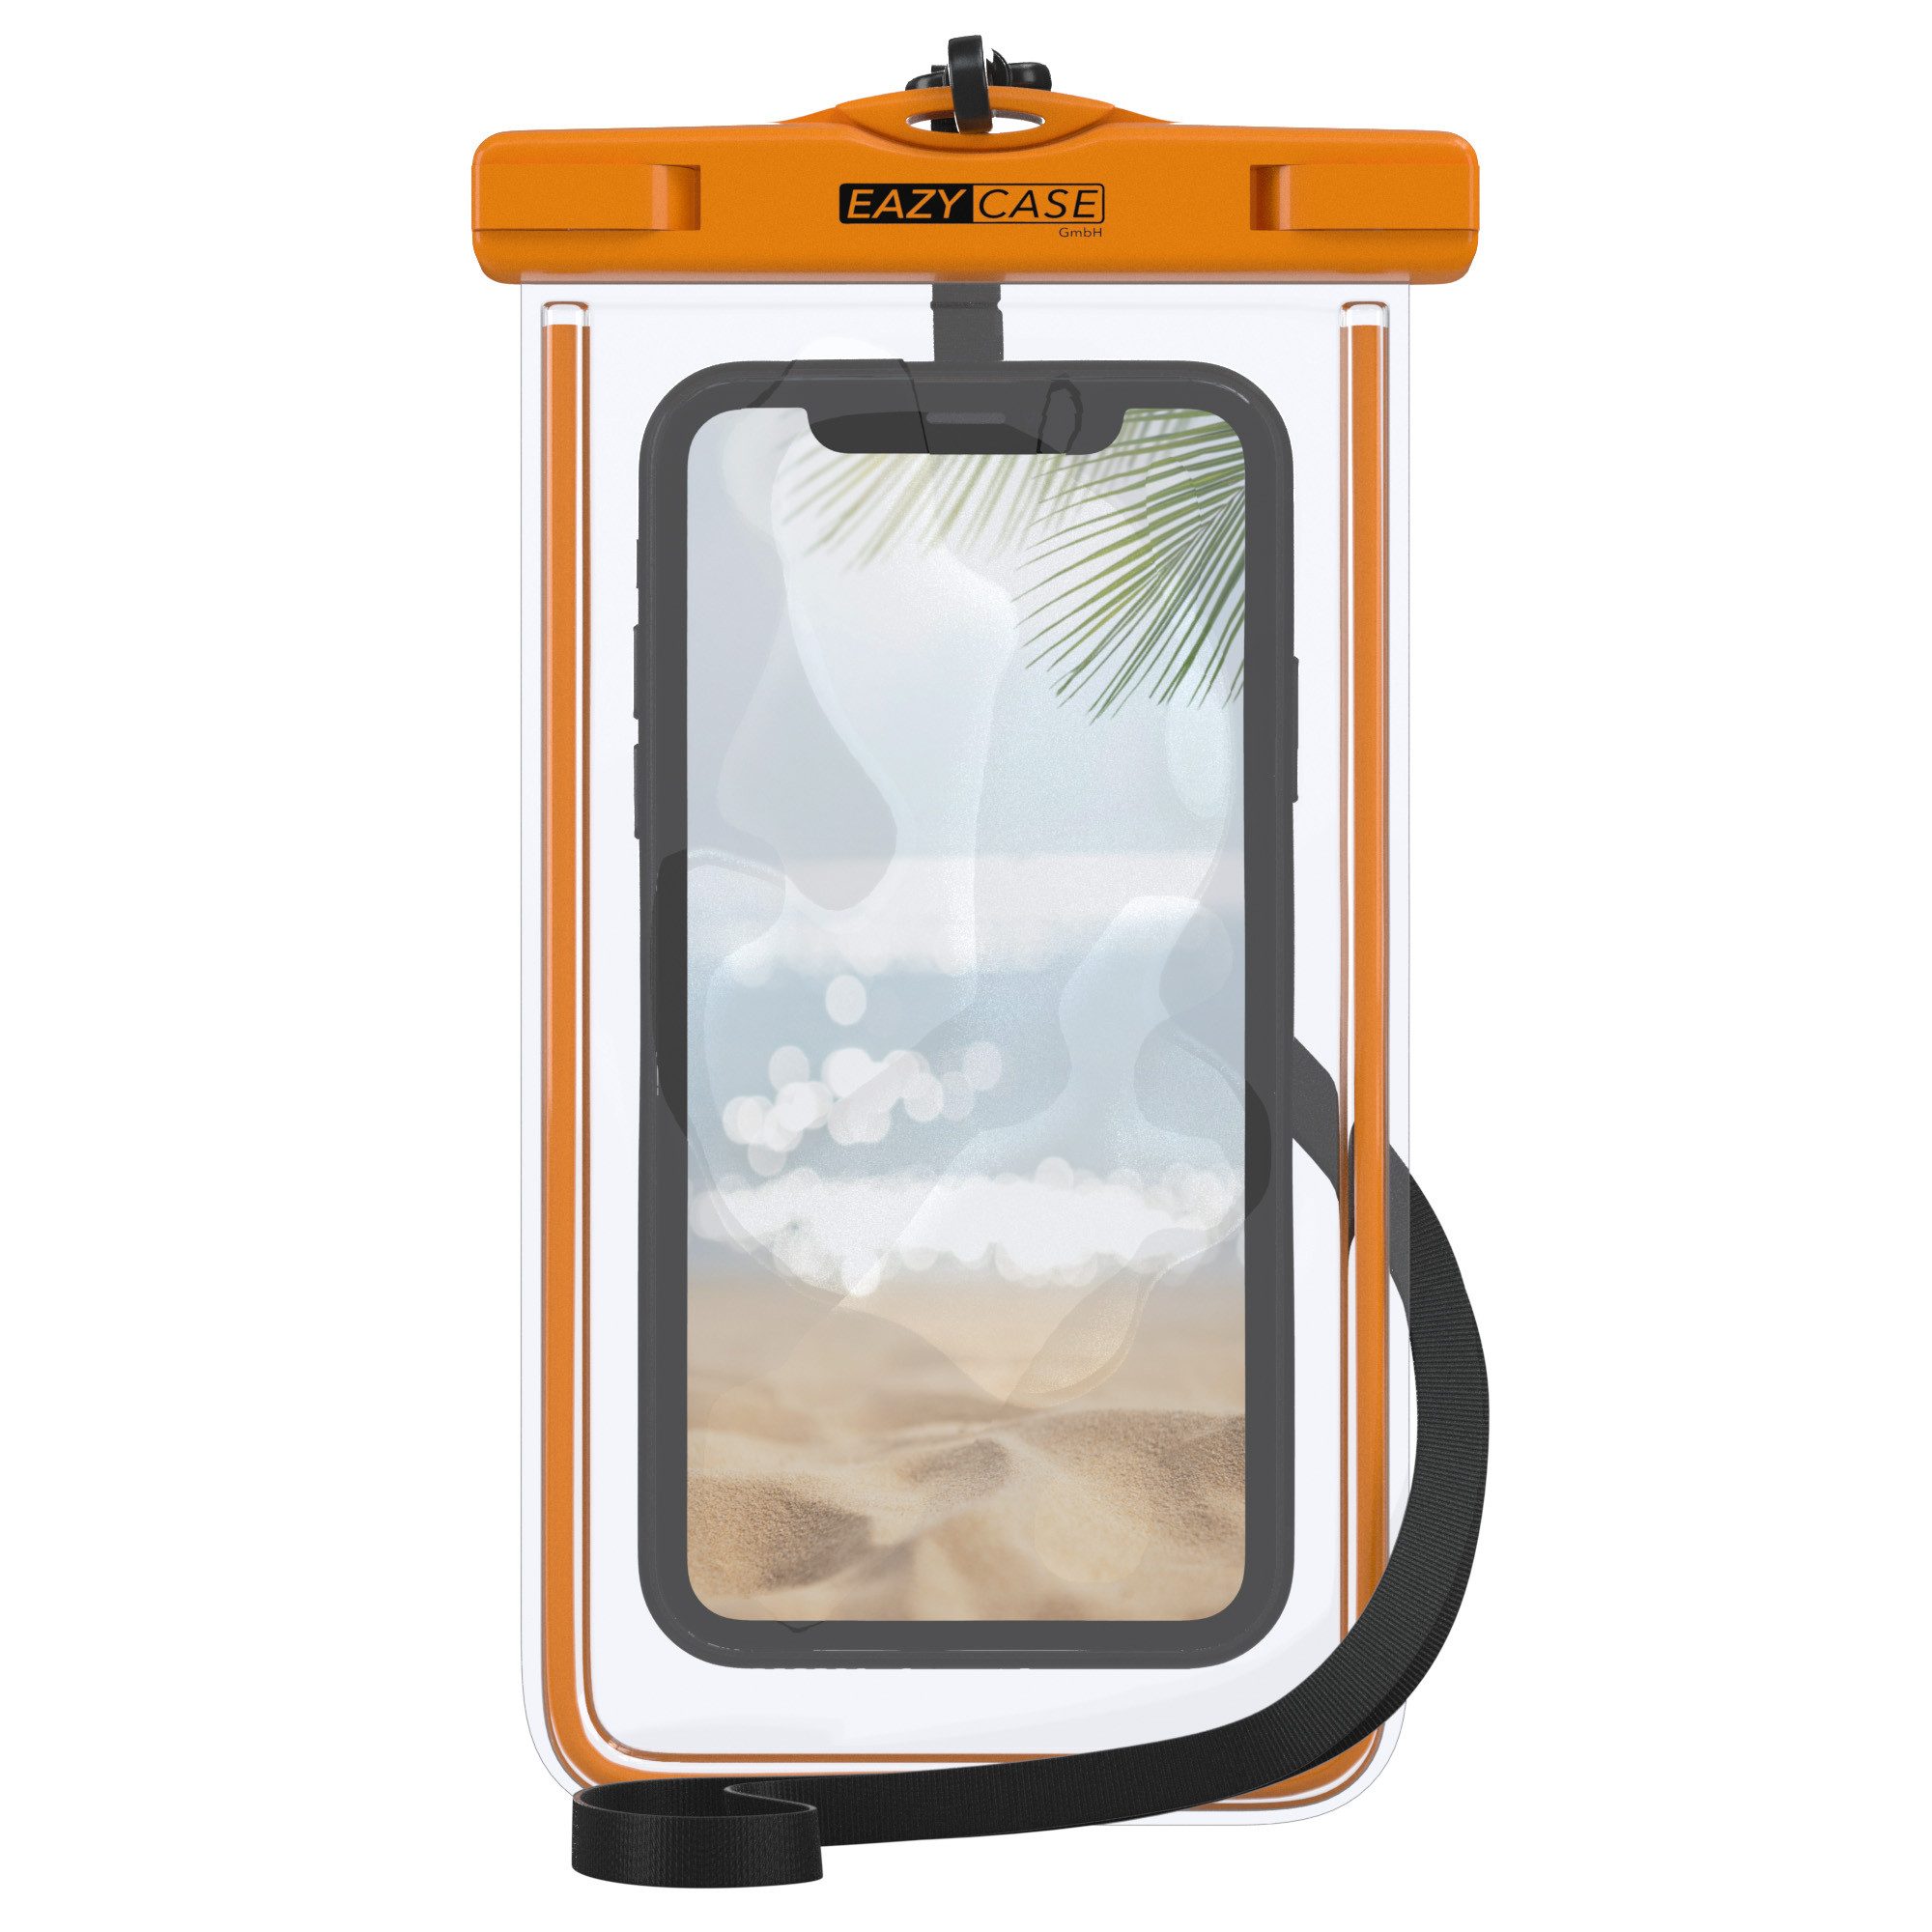 EAZY CASE Handyhülle Universale Unterwasser-Tasche für viele Modelle 3,5 - 6,0 Zoll, wasserdichte Schutzhülle Handytasche mit Band wasserfeste Hülle Orange